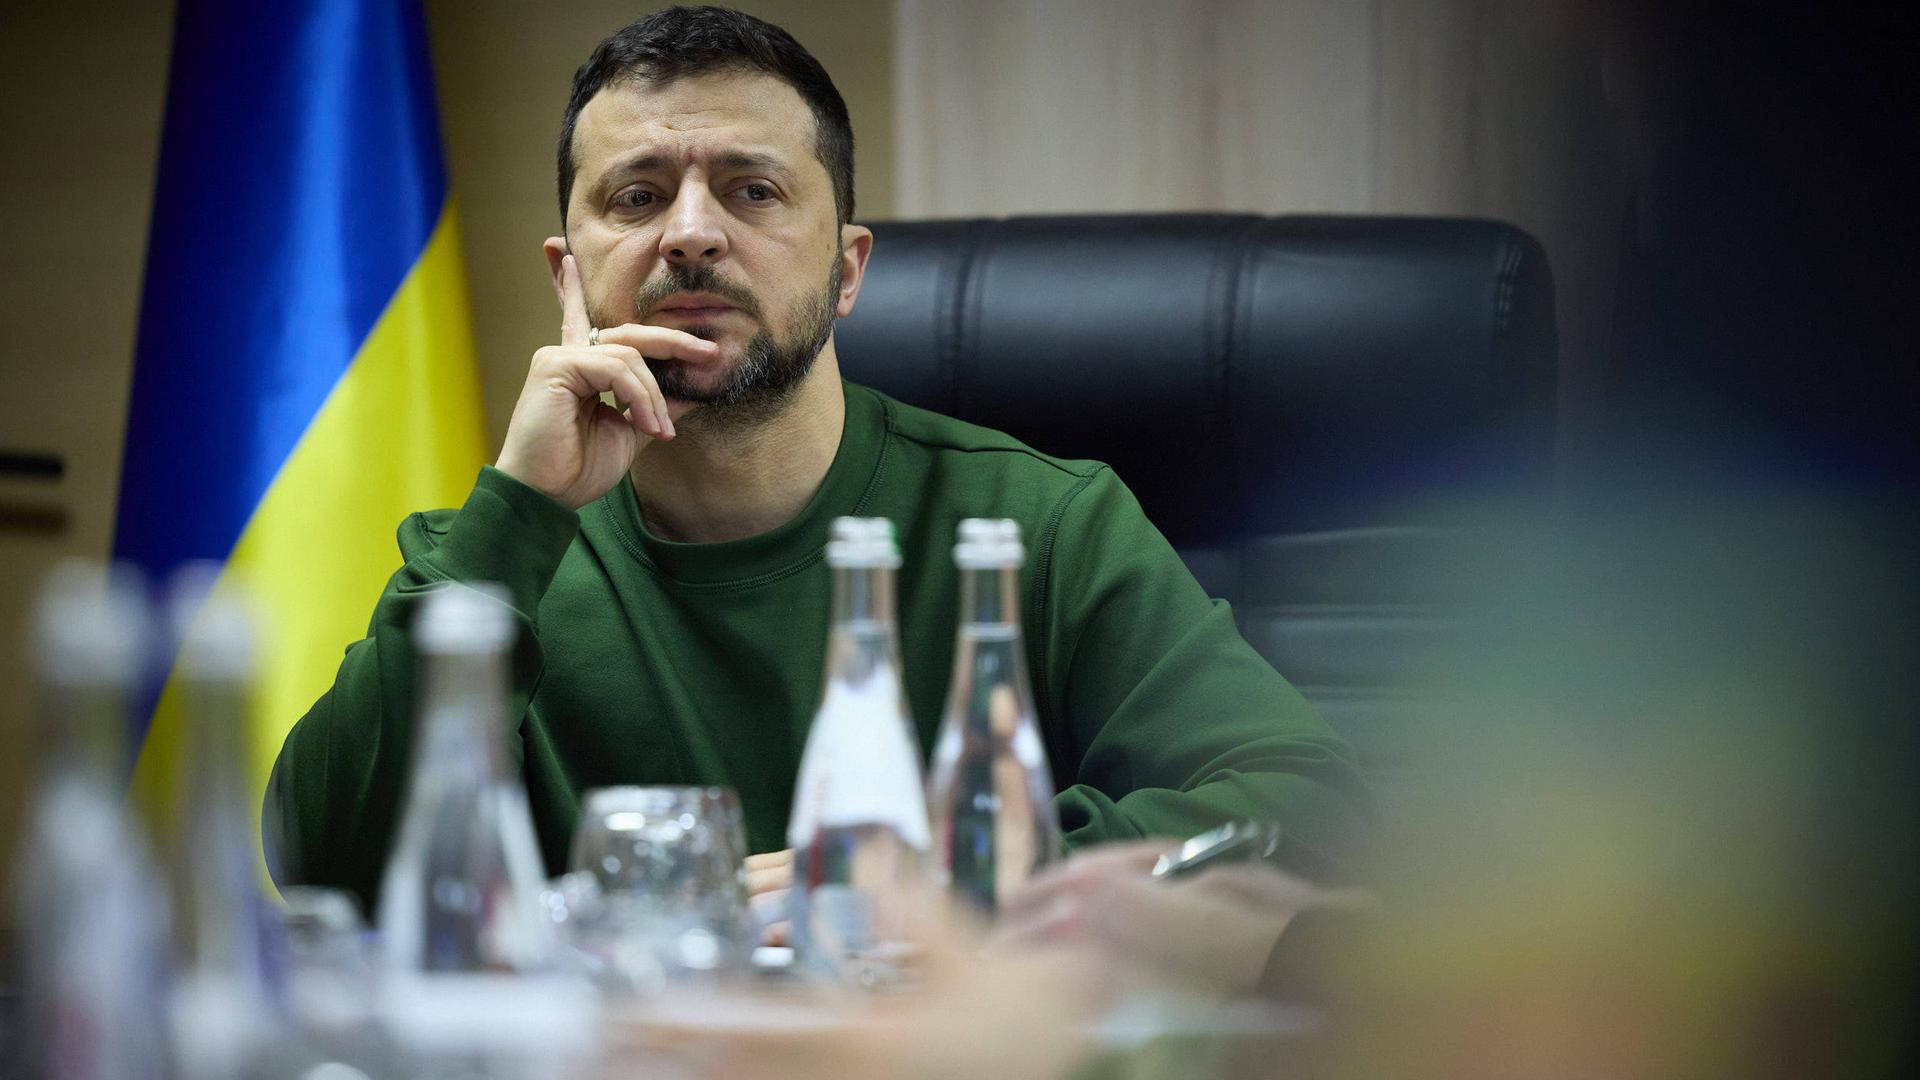 Wolodymyr Selenskyj sitzt an einem Tisch und macht ein nachdenkliches Gesicht. Im Hintergrund ist eine blau-gelbe Flagge seines Landes zu sehen.